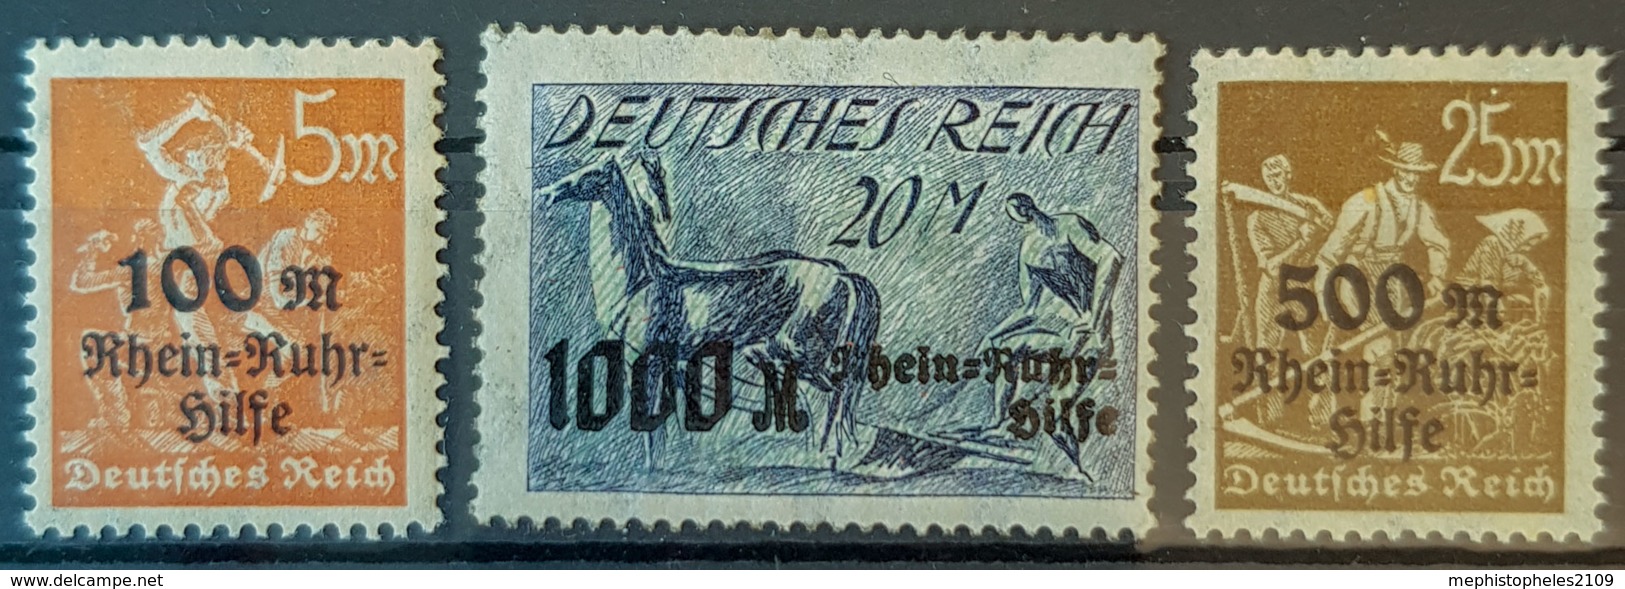 DEUTSCHES REICH - MNH - Mi 258-260 - Rhein-Ruhr-Hilfe - Nuovi